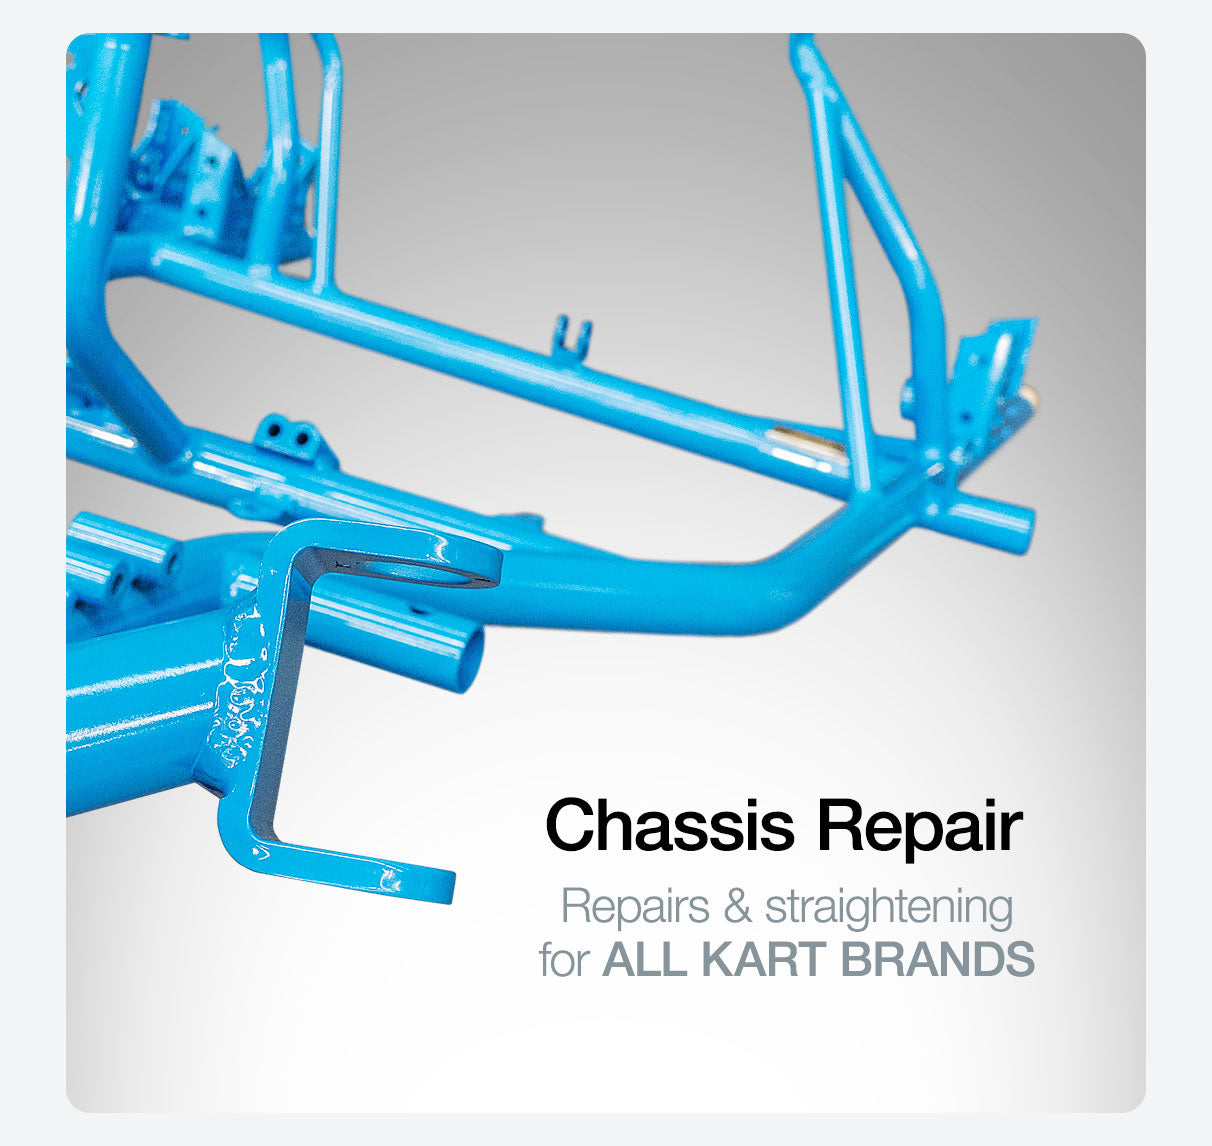 Go Kart Chassis Repair and straightening